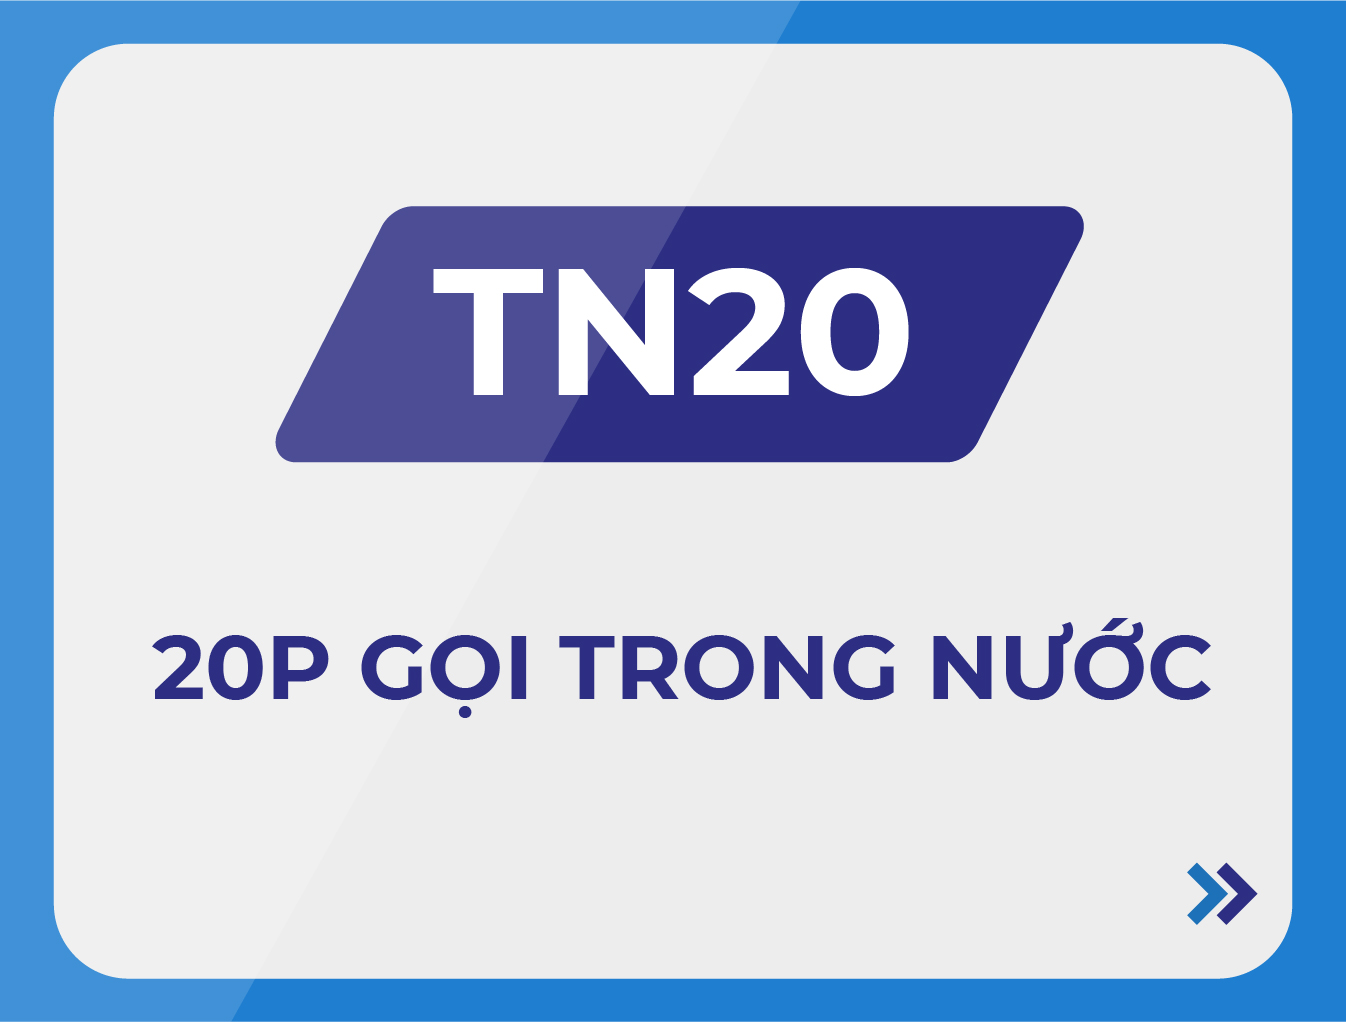 TN20